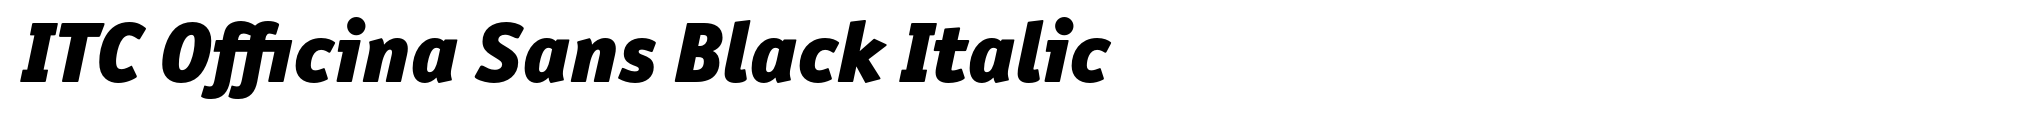 ITC Officina Sans Black Italic image